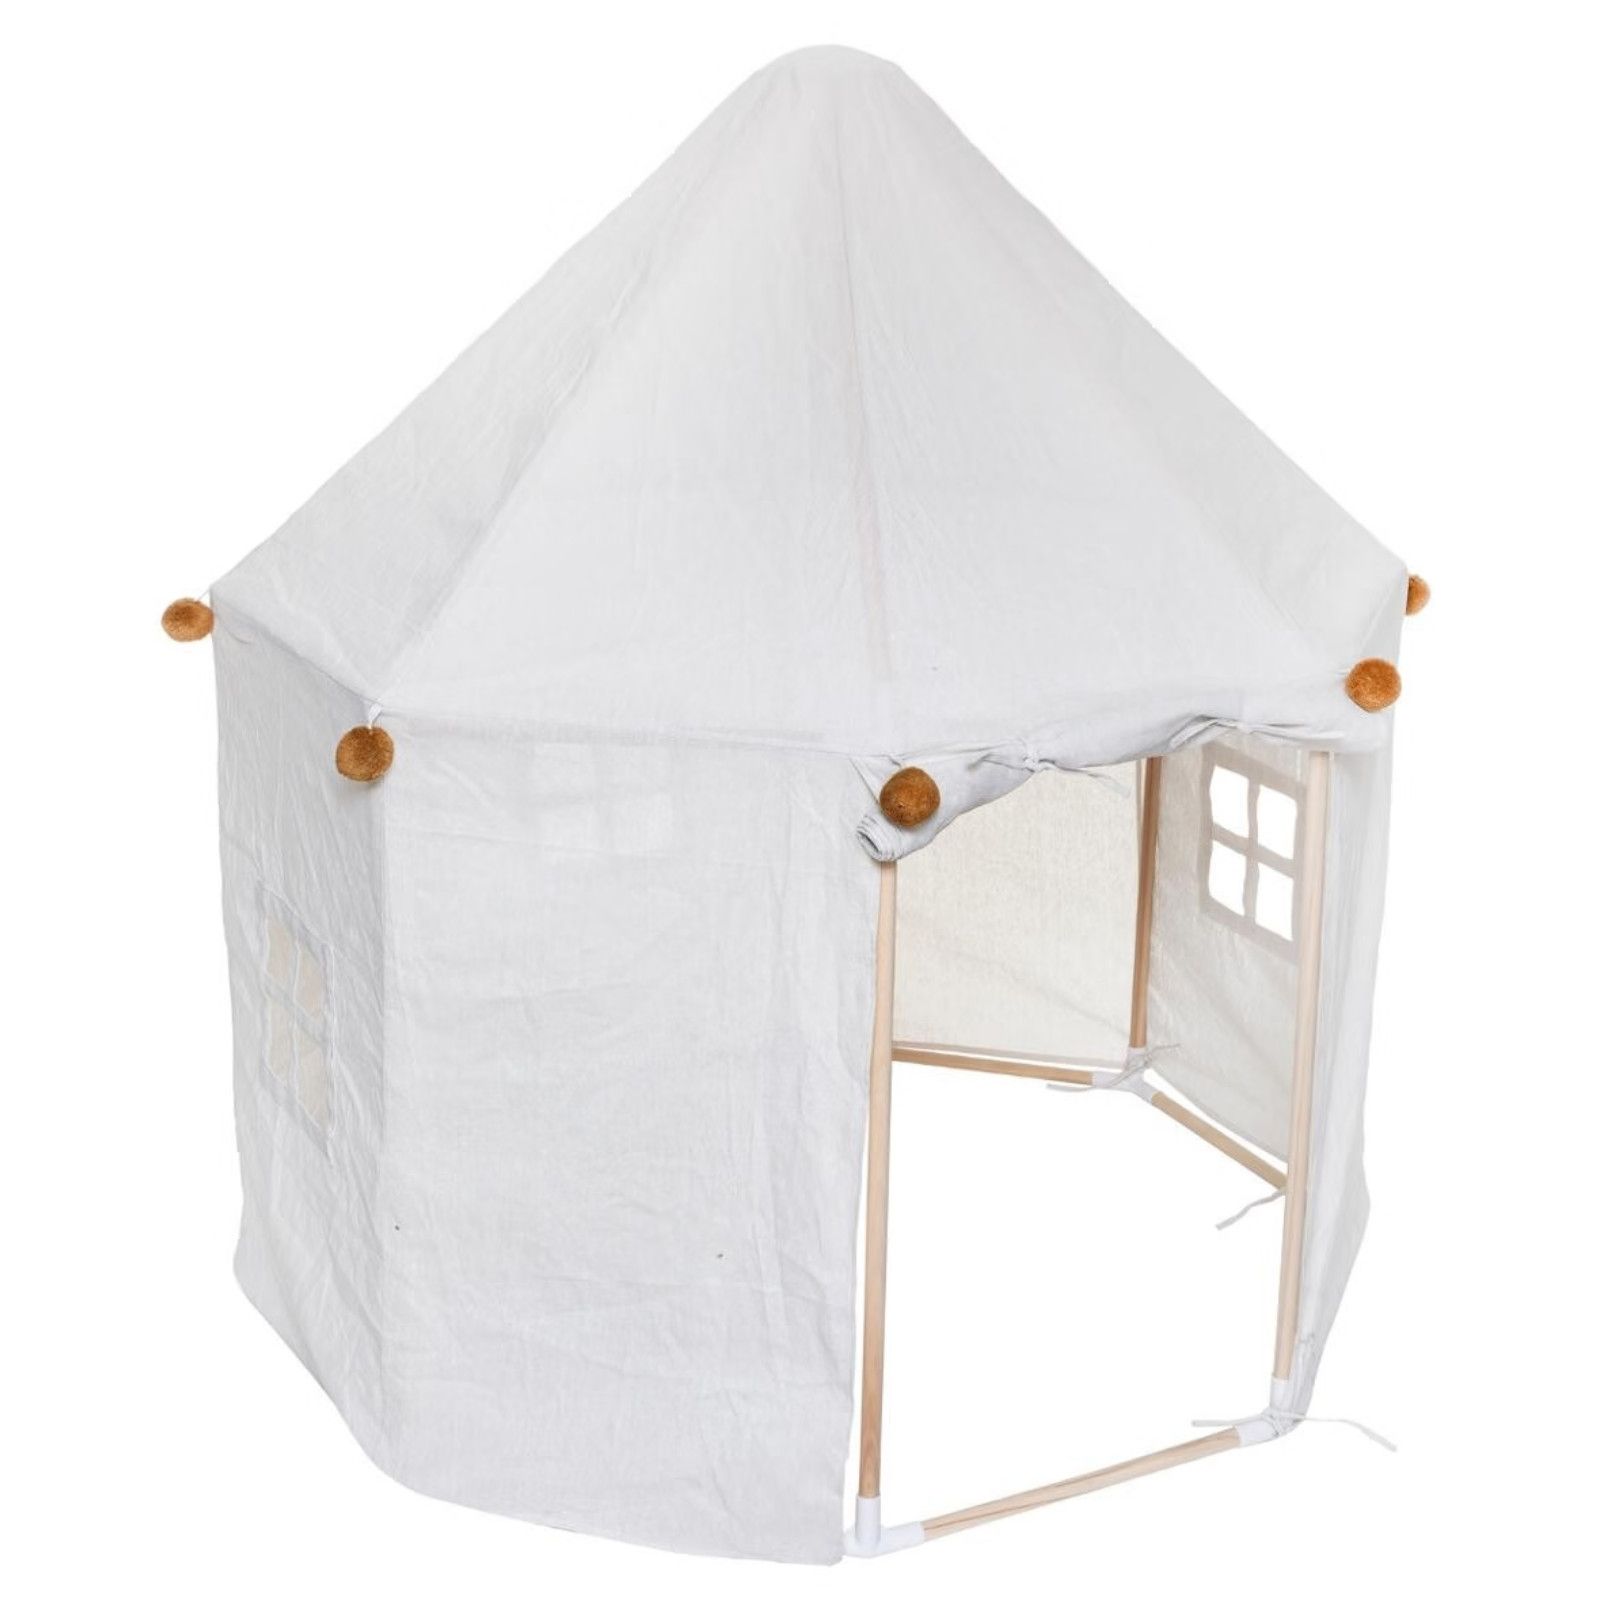 Tenda per casetta per bambini 116x126h cm in tessuto - Scouty